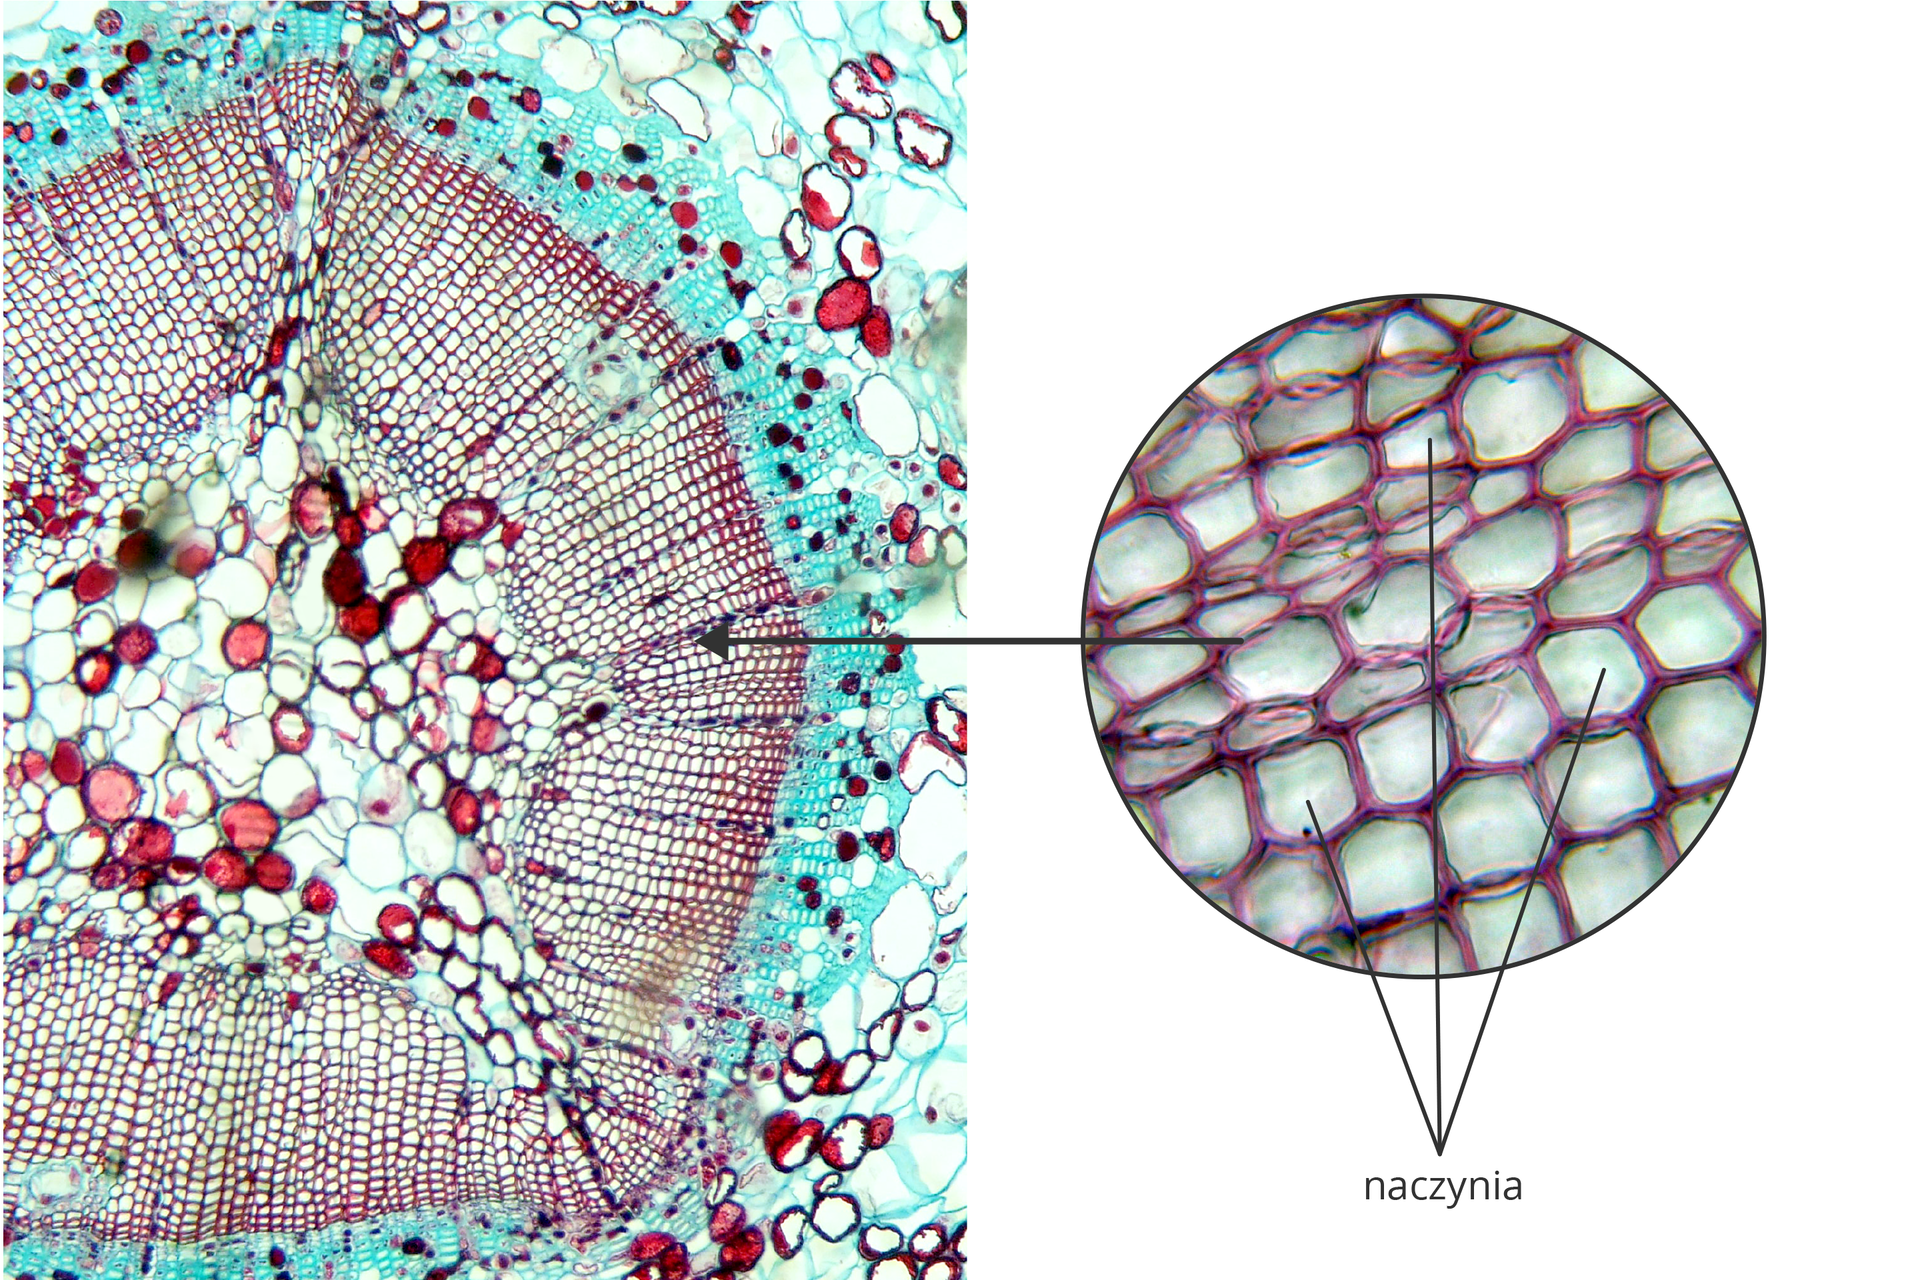 Fotografia mikroskopowa przestawia wiele bryłek w różnych kolorach. To przekrój przez zdrewniała gałązkę. Powiększenie obok wskazuje naczynia, wielokątne komórki o liliowych ścianach.